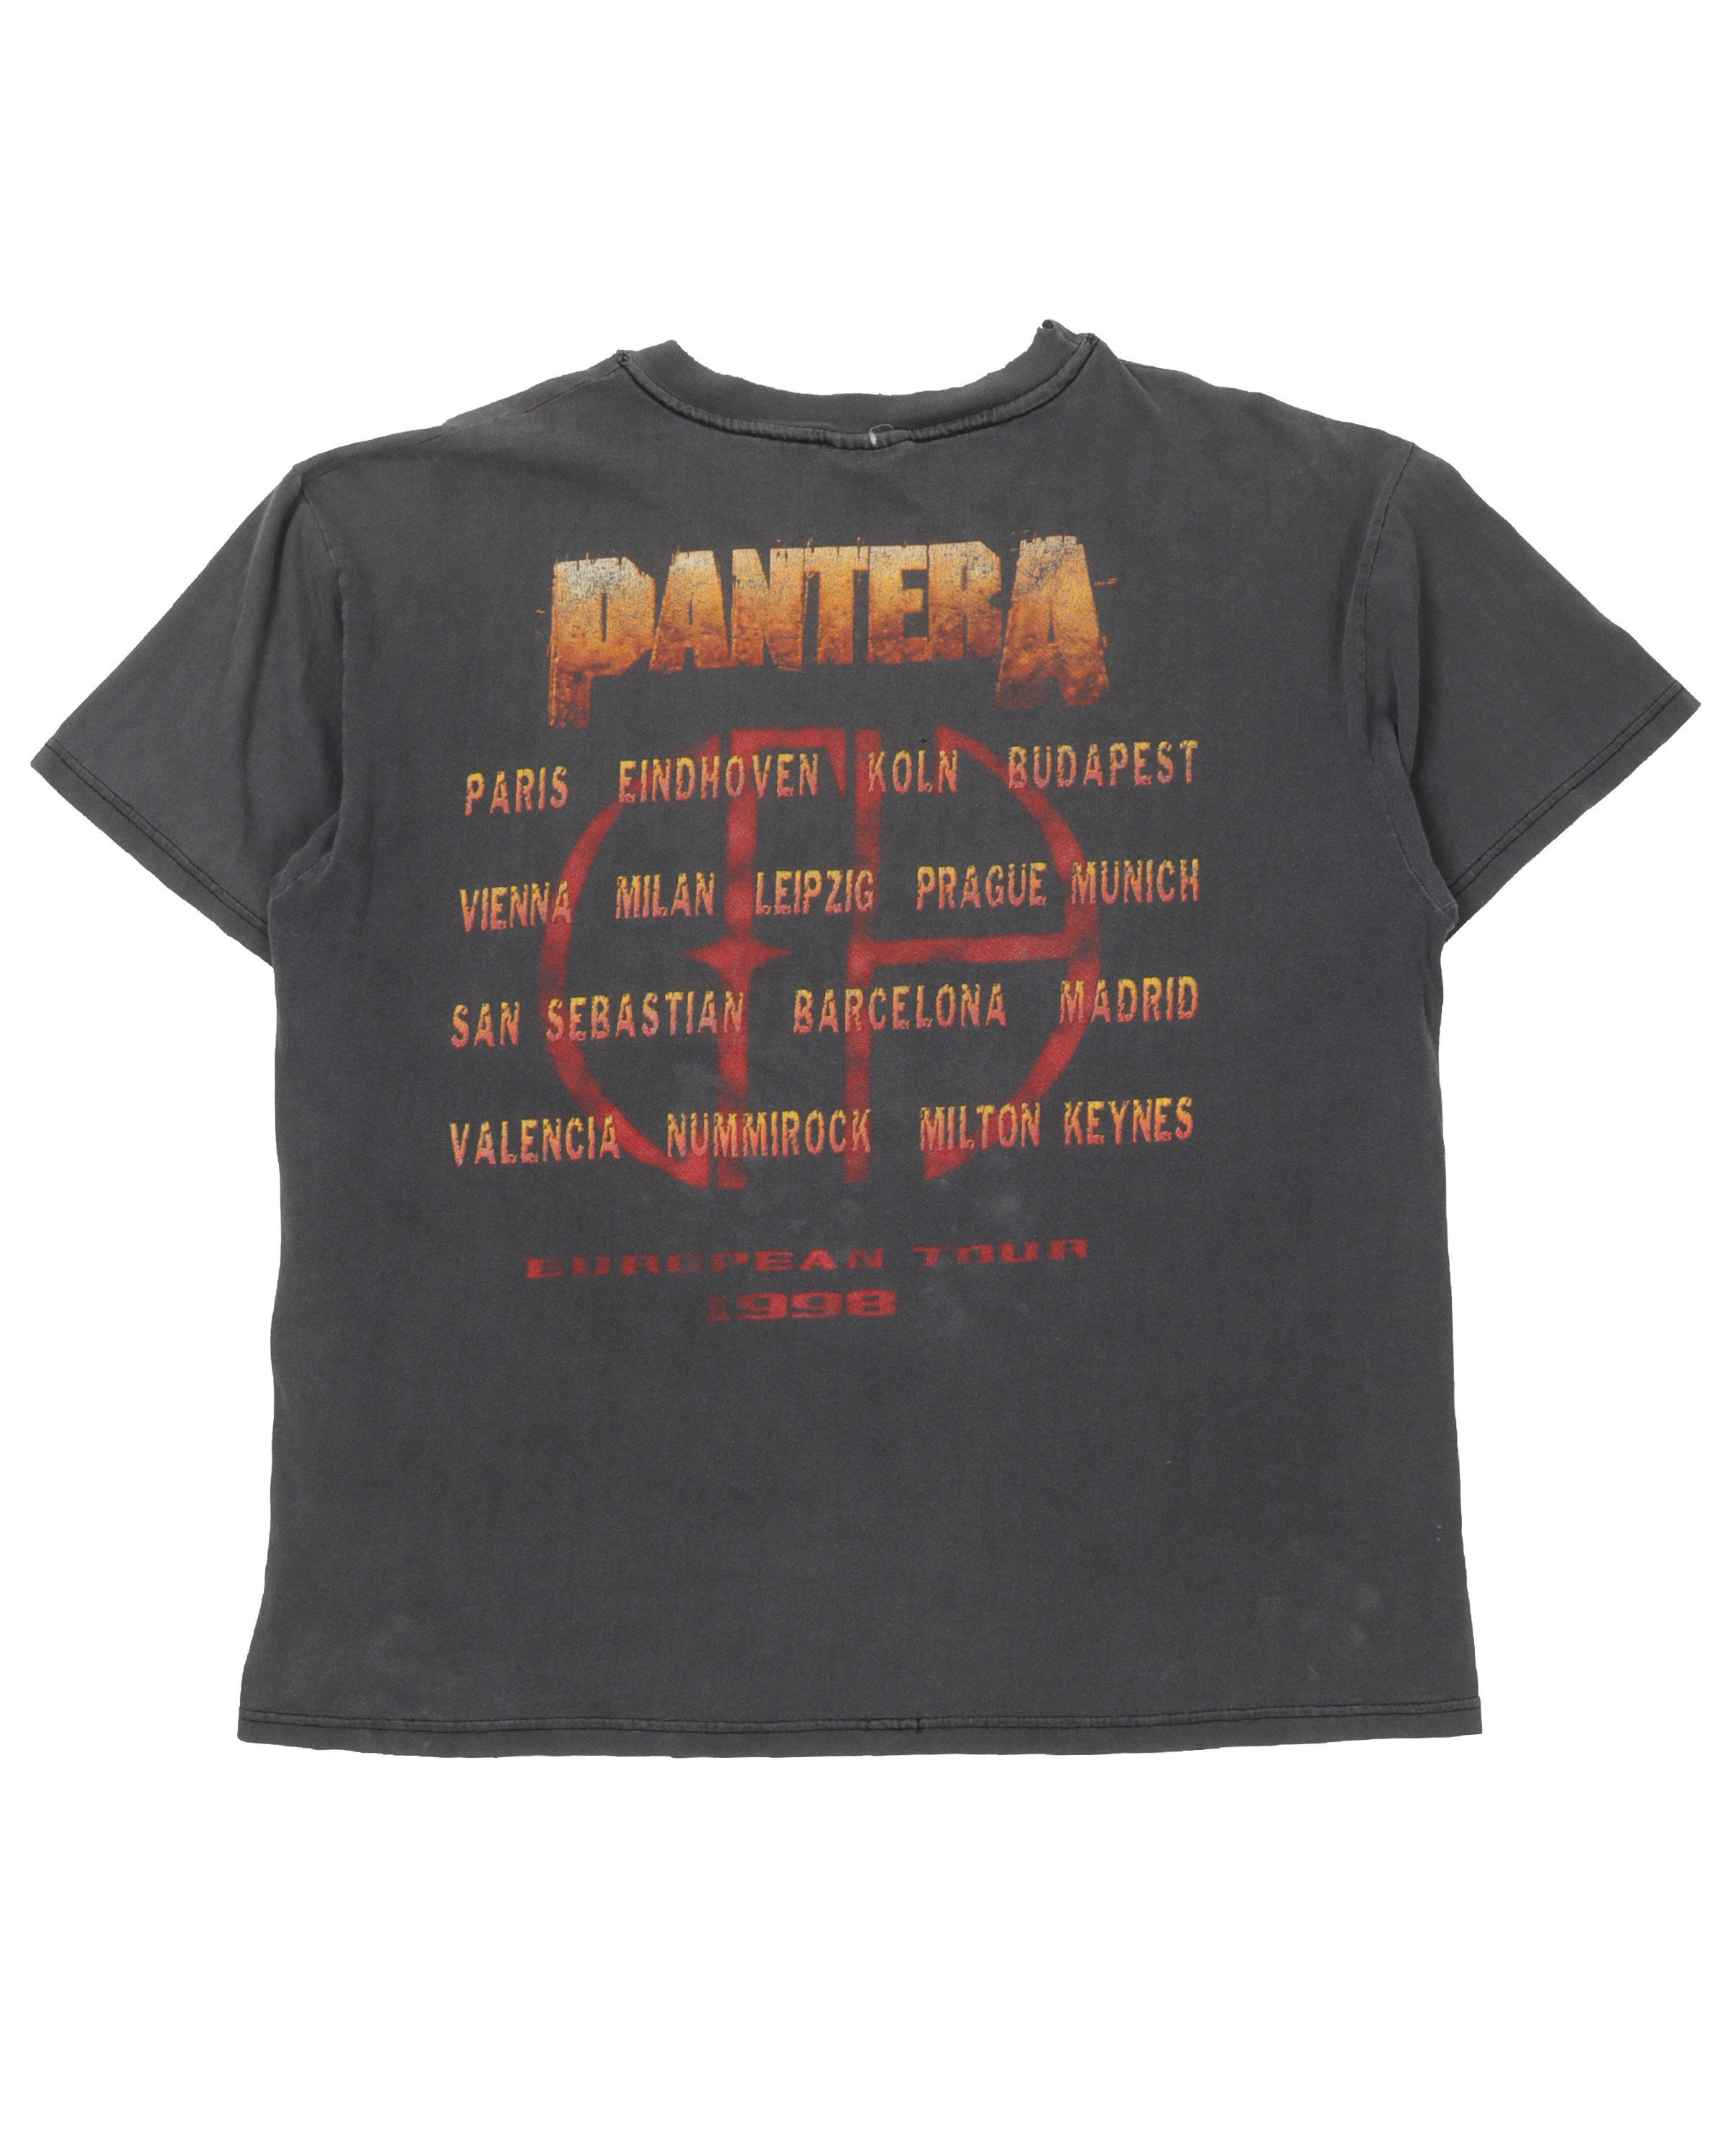 Pantera 1998 Tour T-Shirt